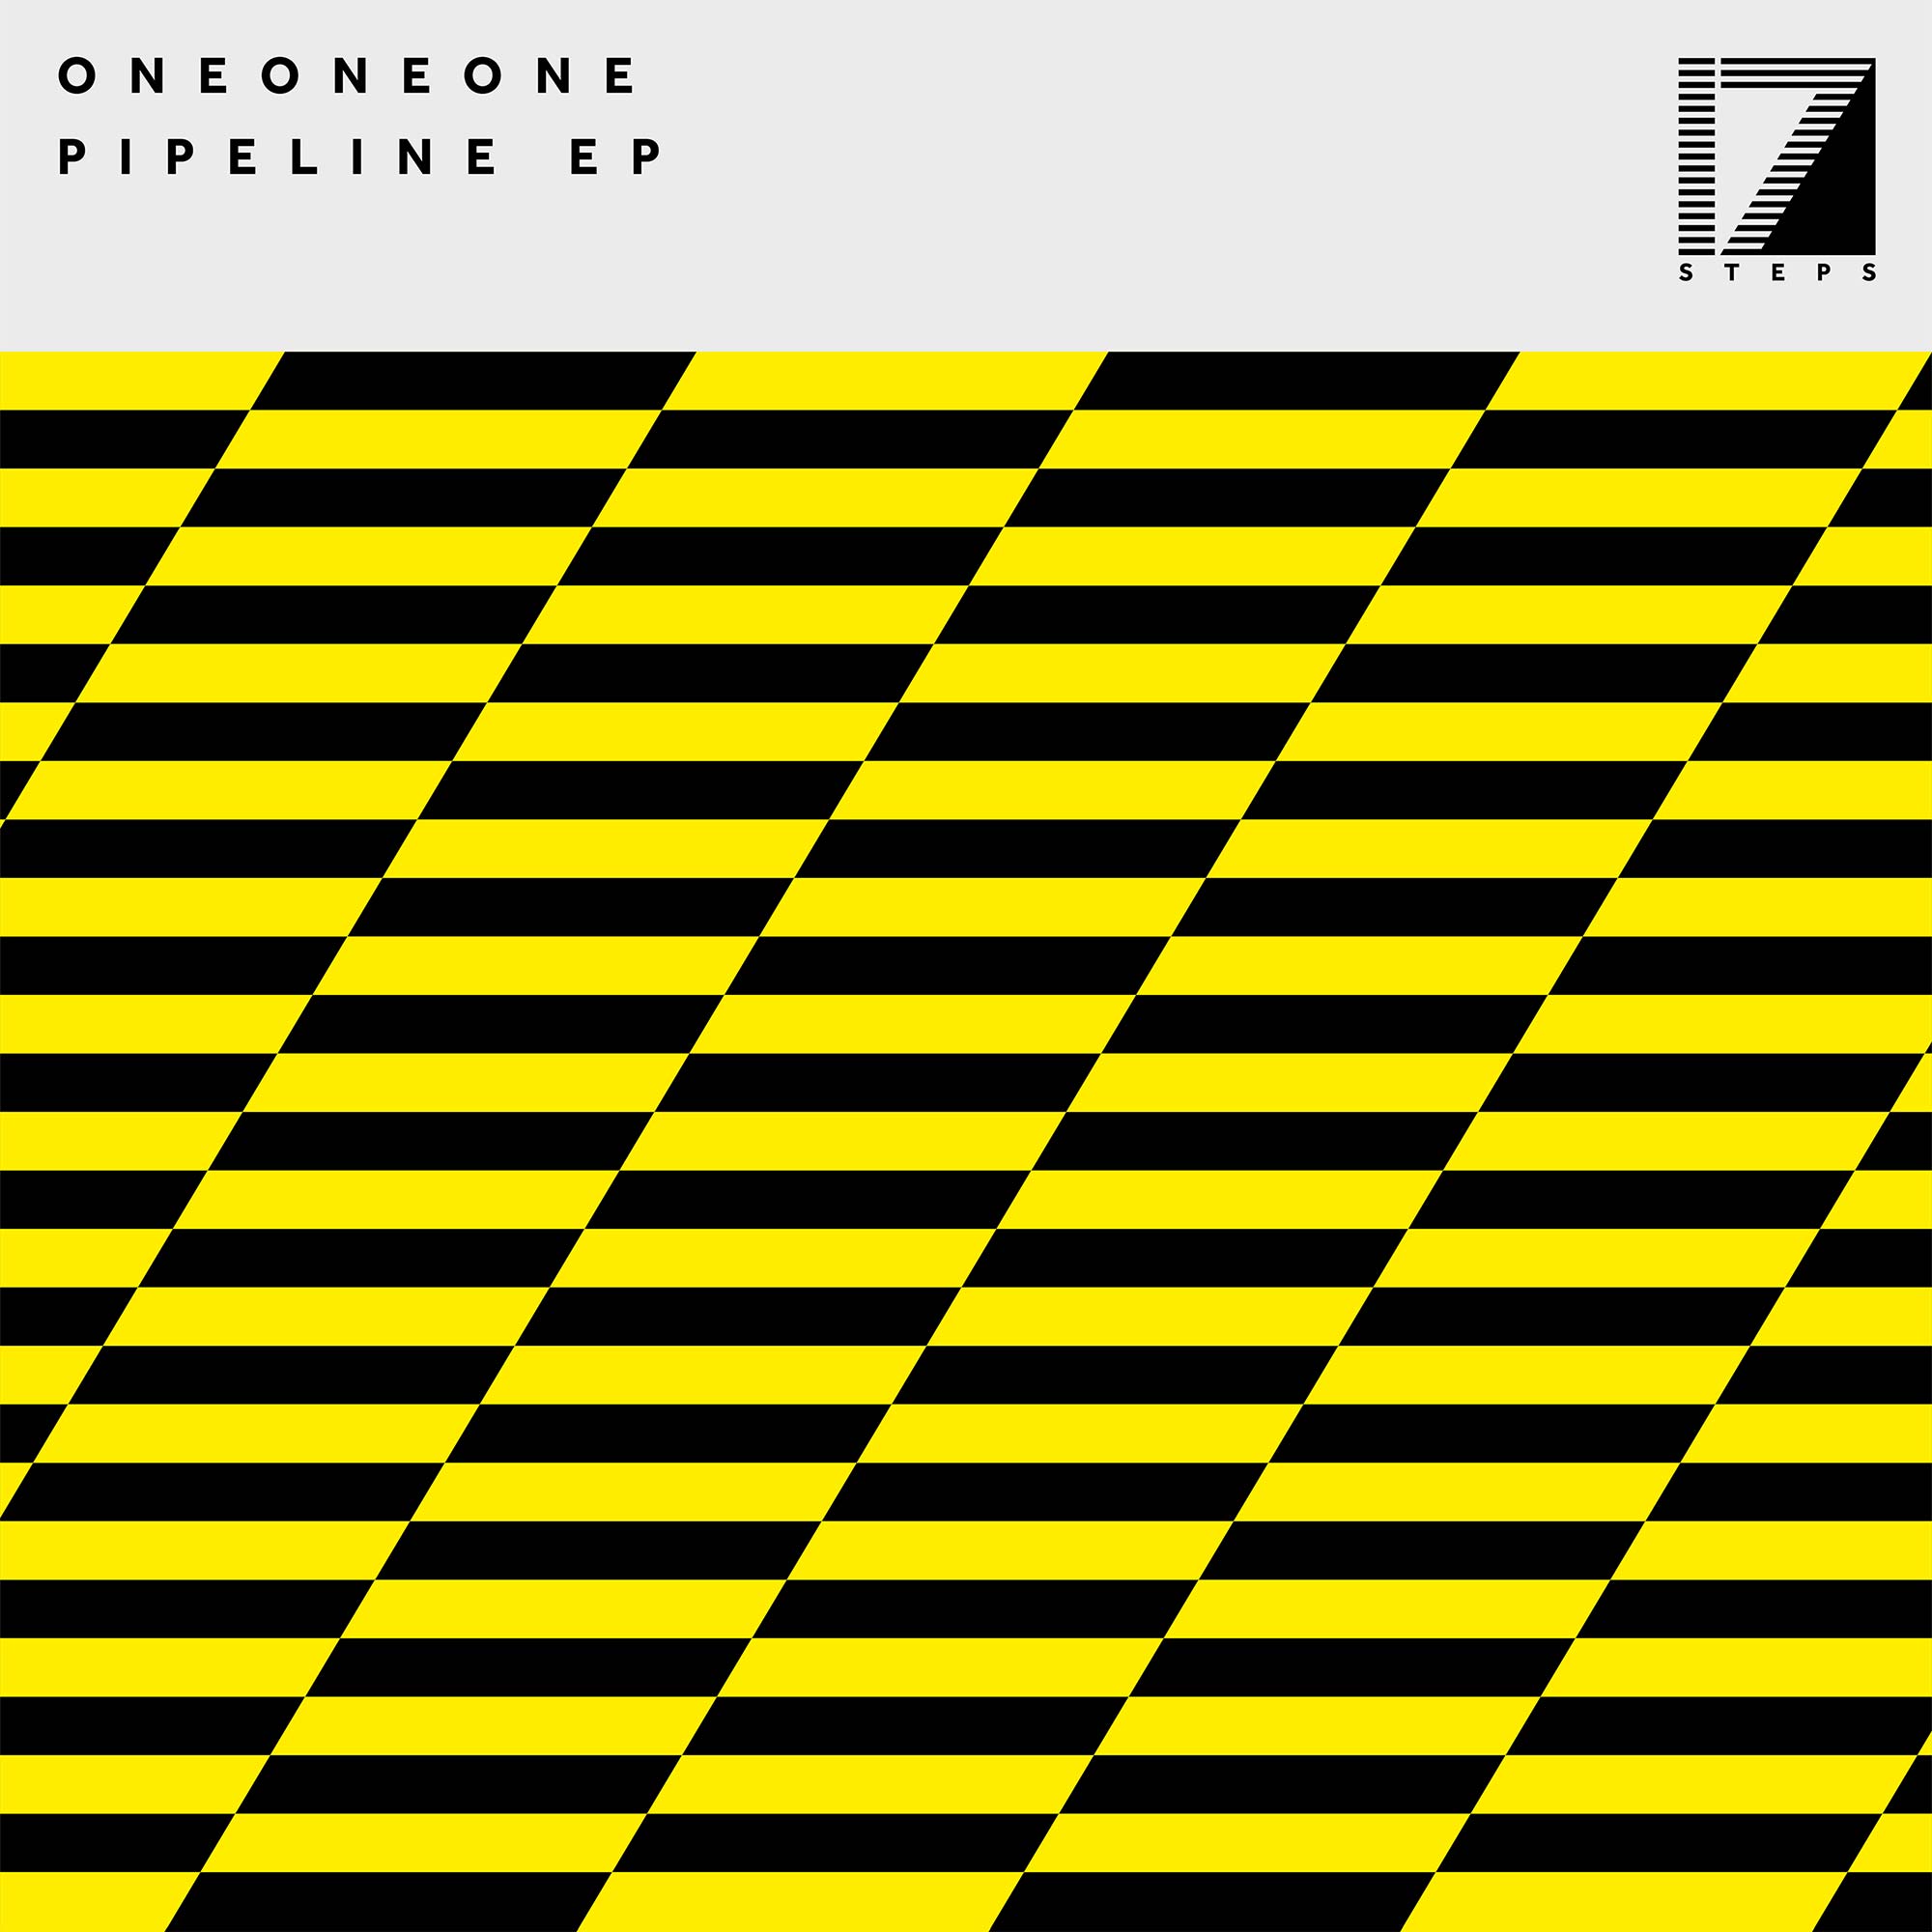 ONEONEONE – PIPELINE EP